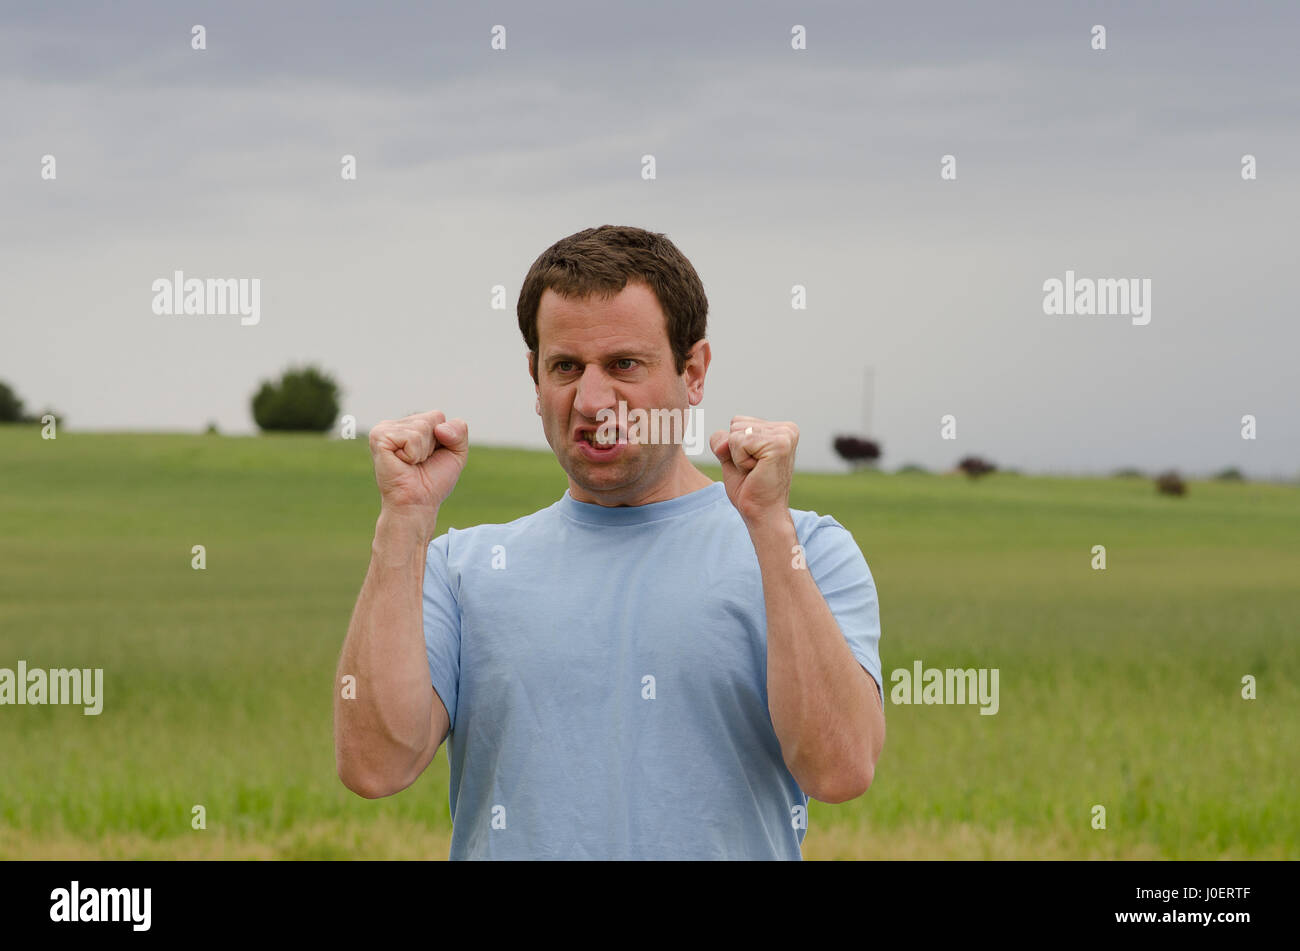 Angry Man all aperto con pugni serrata con un campo erboso dietro di lui. Foto Stock